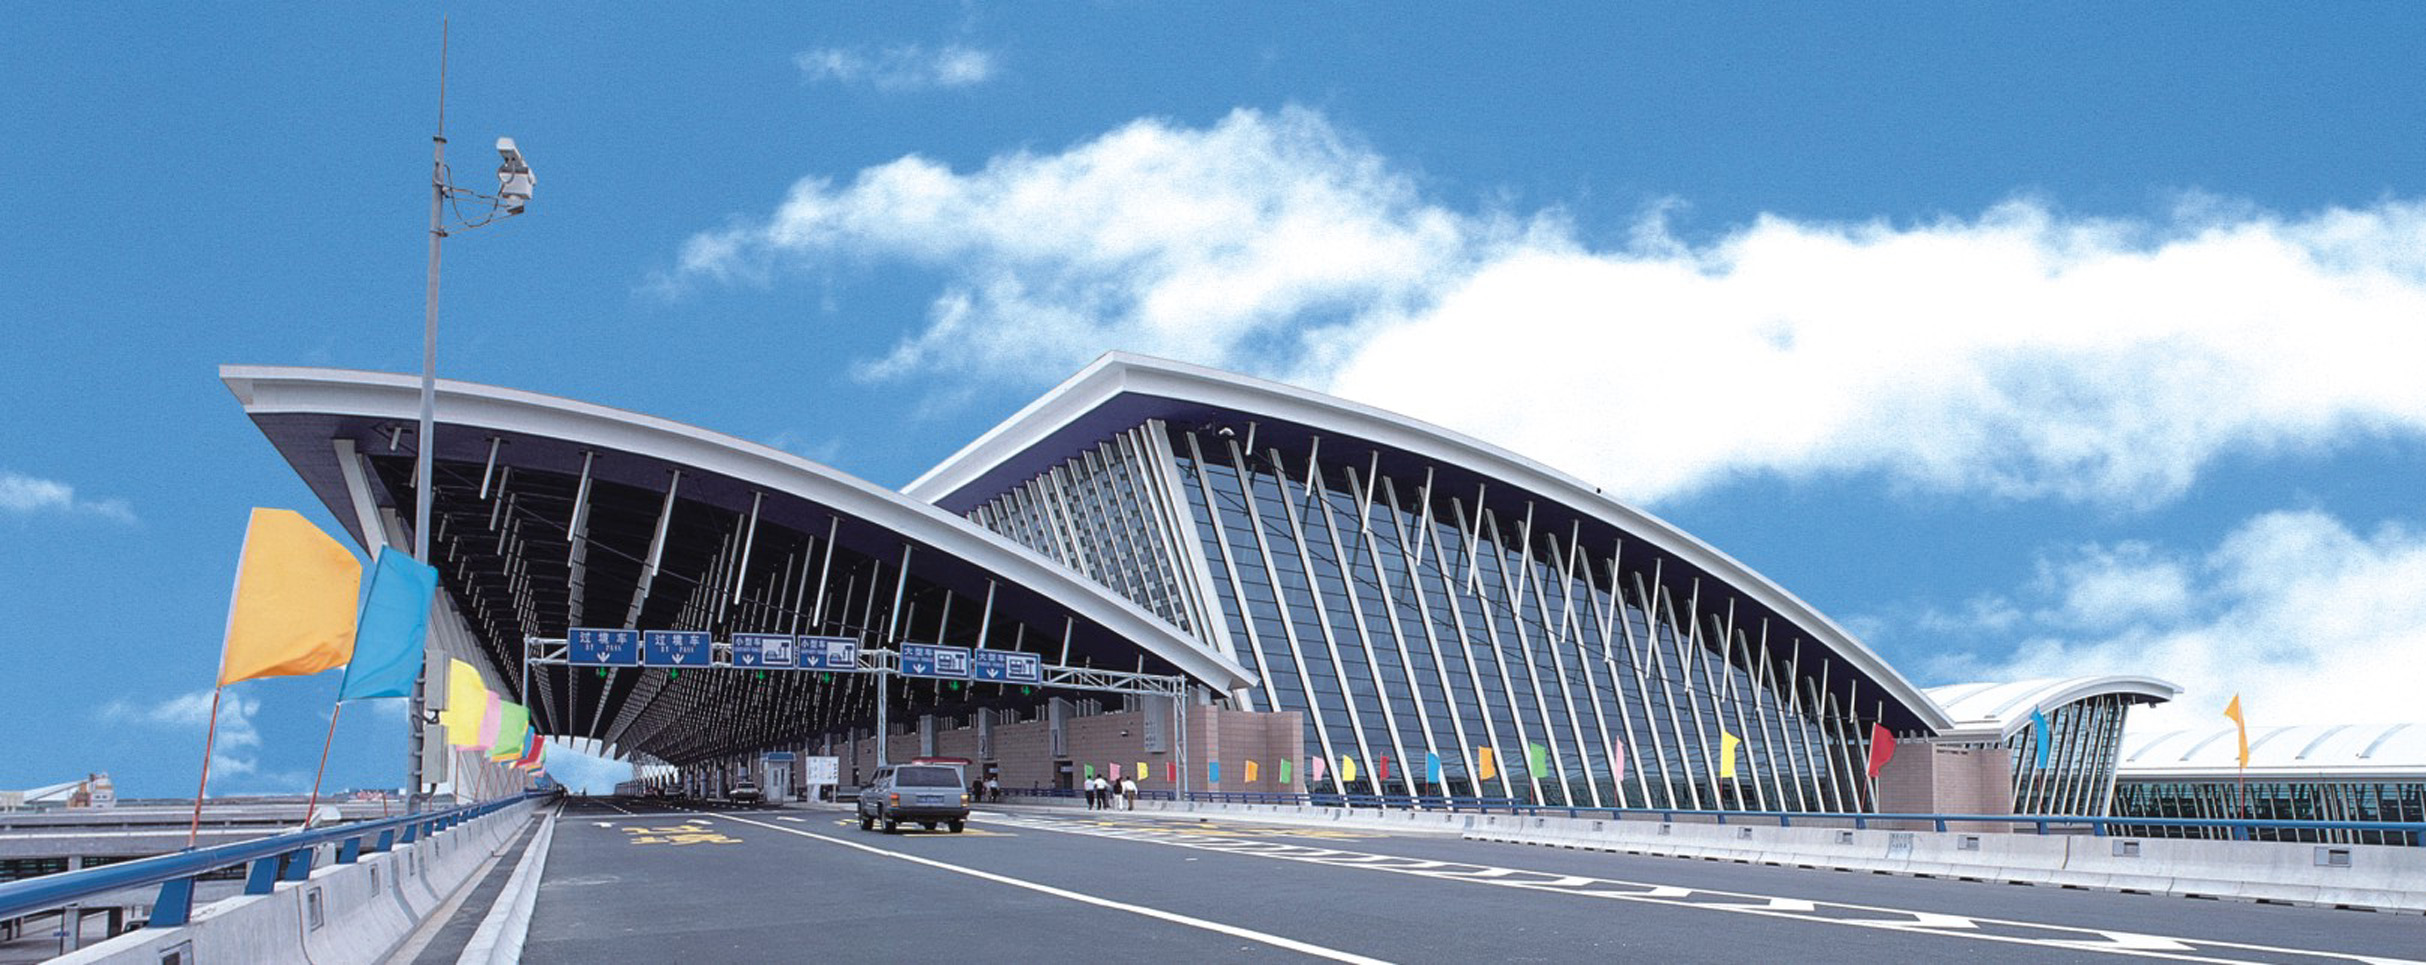 上海浦东国际机场位于中国上海市浦东新区滨海地带,面积为40平方公里